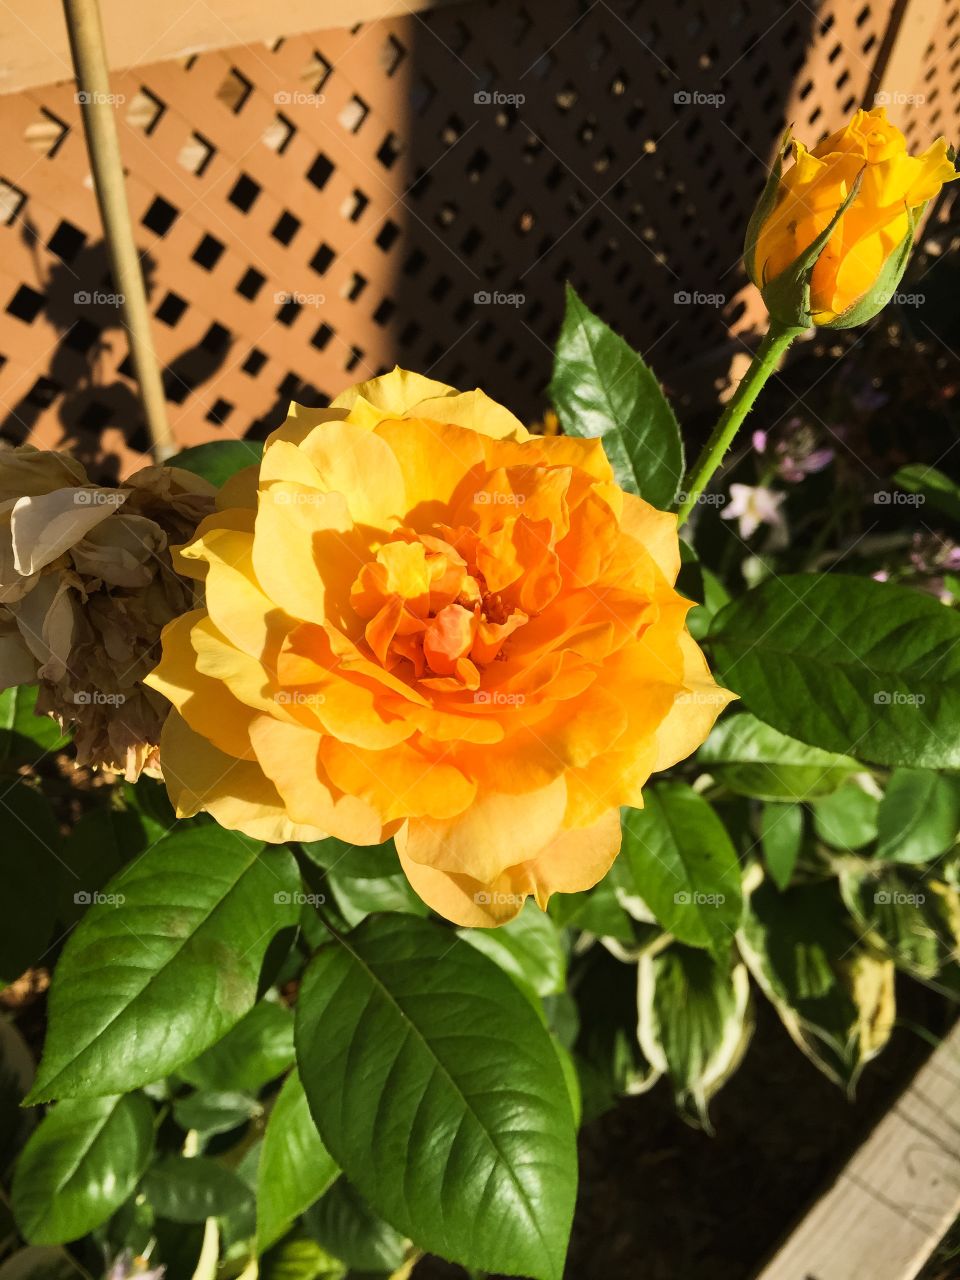 Orange trellis rose